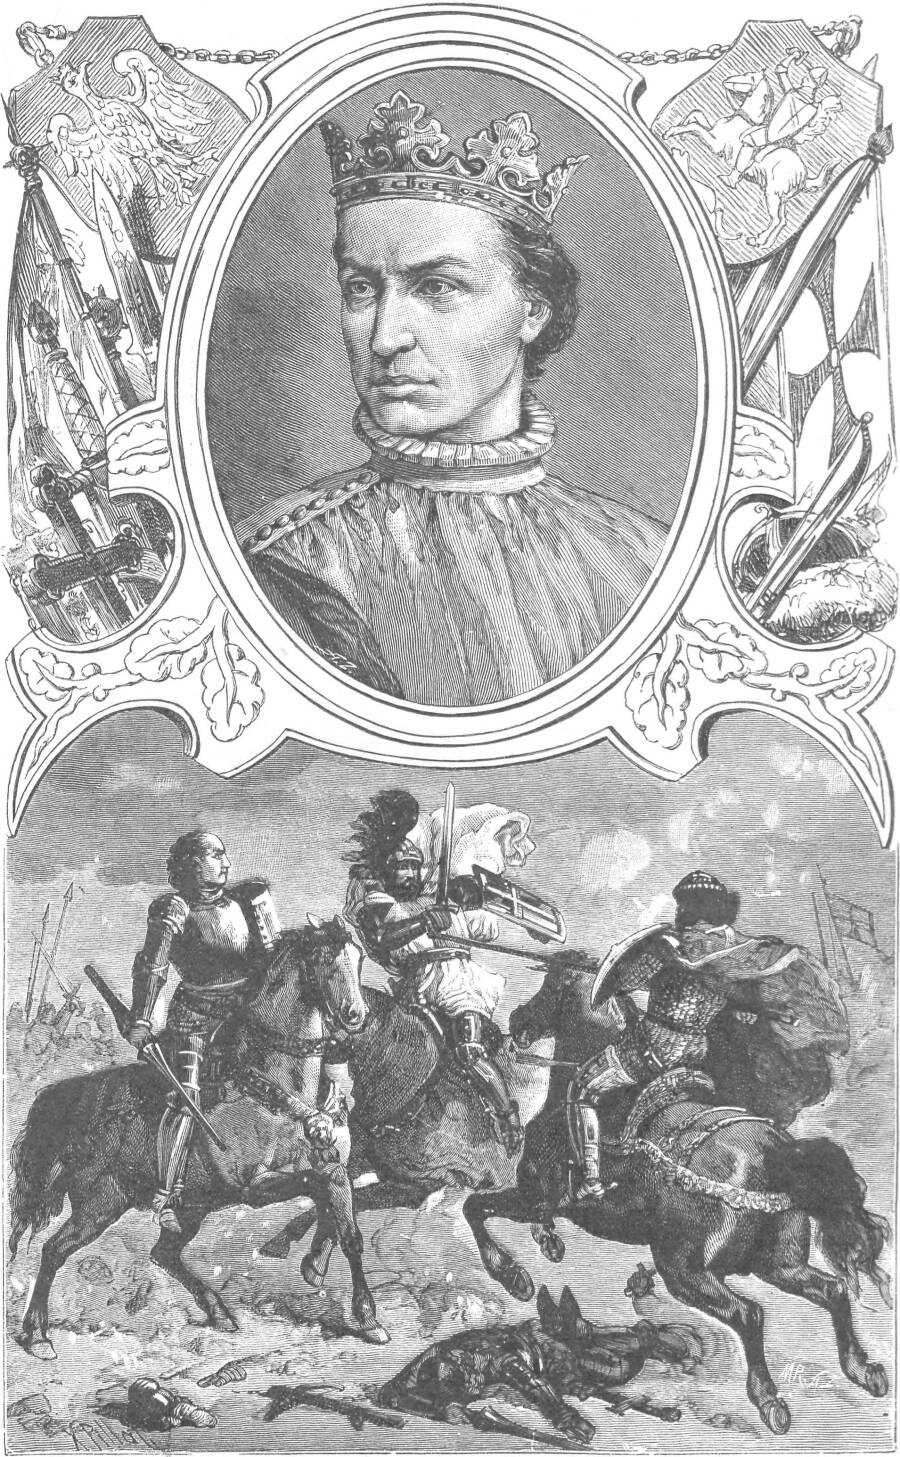 Ксавери Пилати (1843-1902). Картина, изображающая великого князя литовского и короля Польши Ягайлу. 1888 год